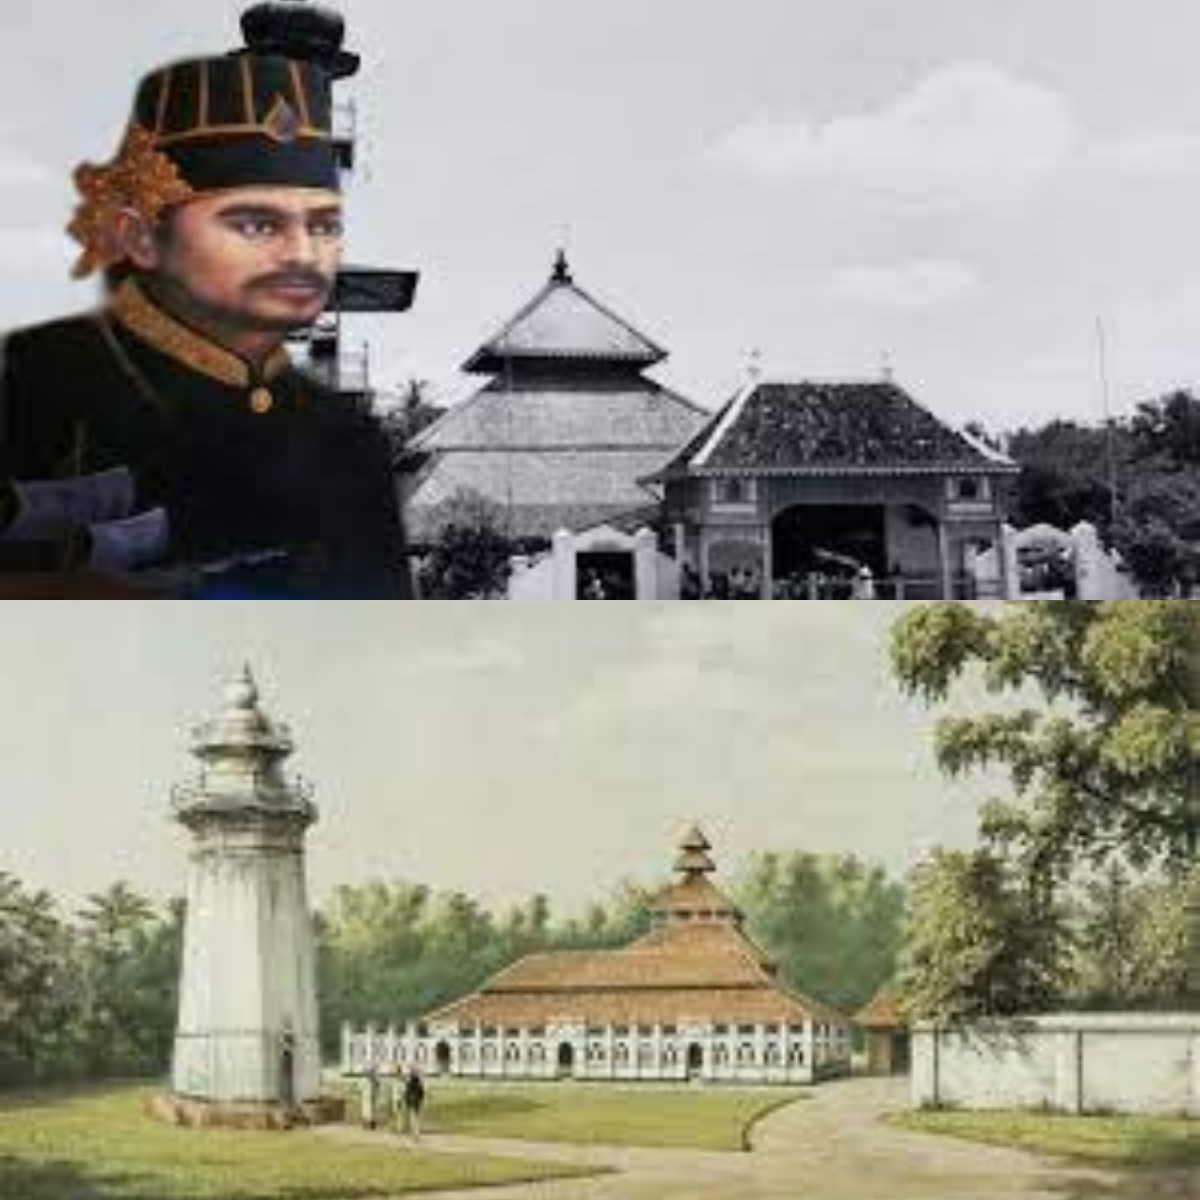 Mengulik Sejarah Kerajaan Demak! Inilah Peran Penting Sultan Trenggana dalam Kemajuan Militer Kesultanan Demak